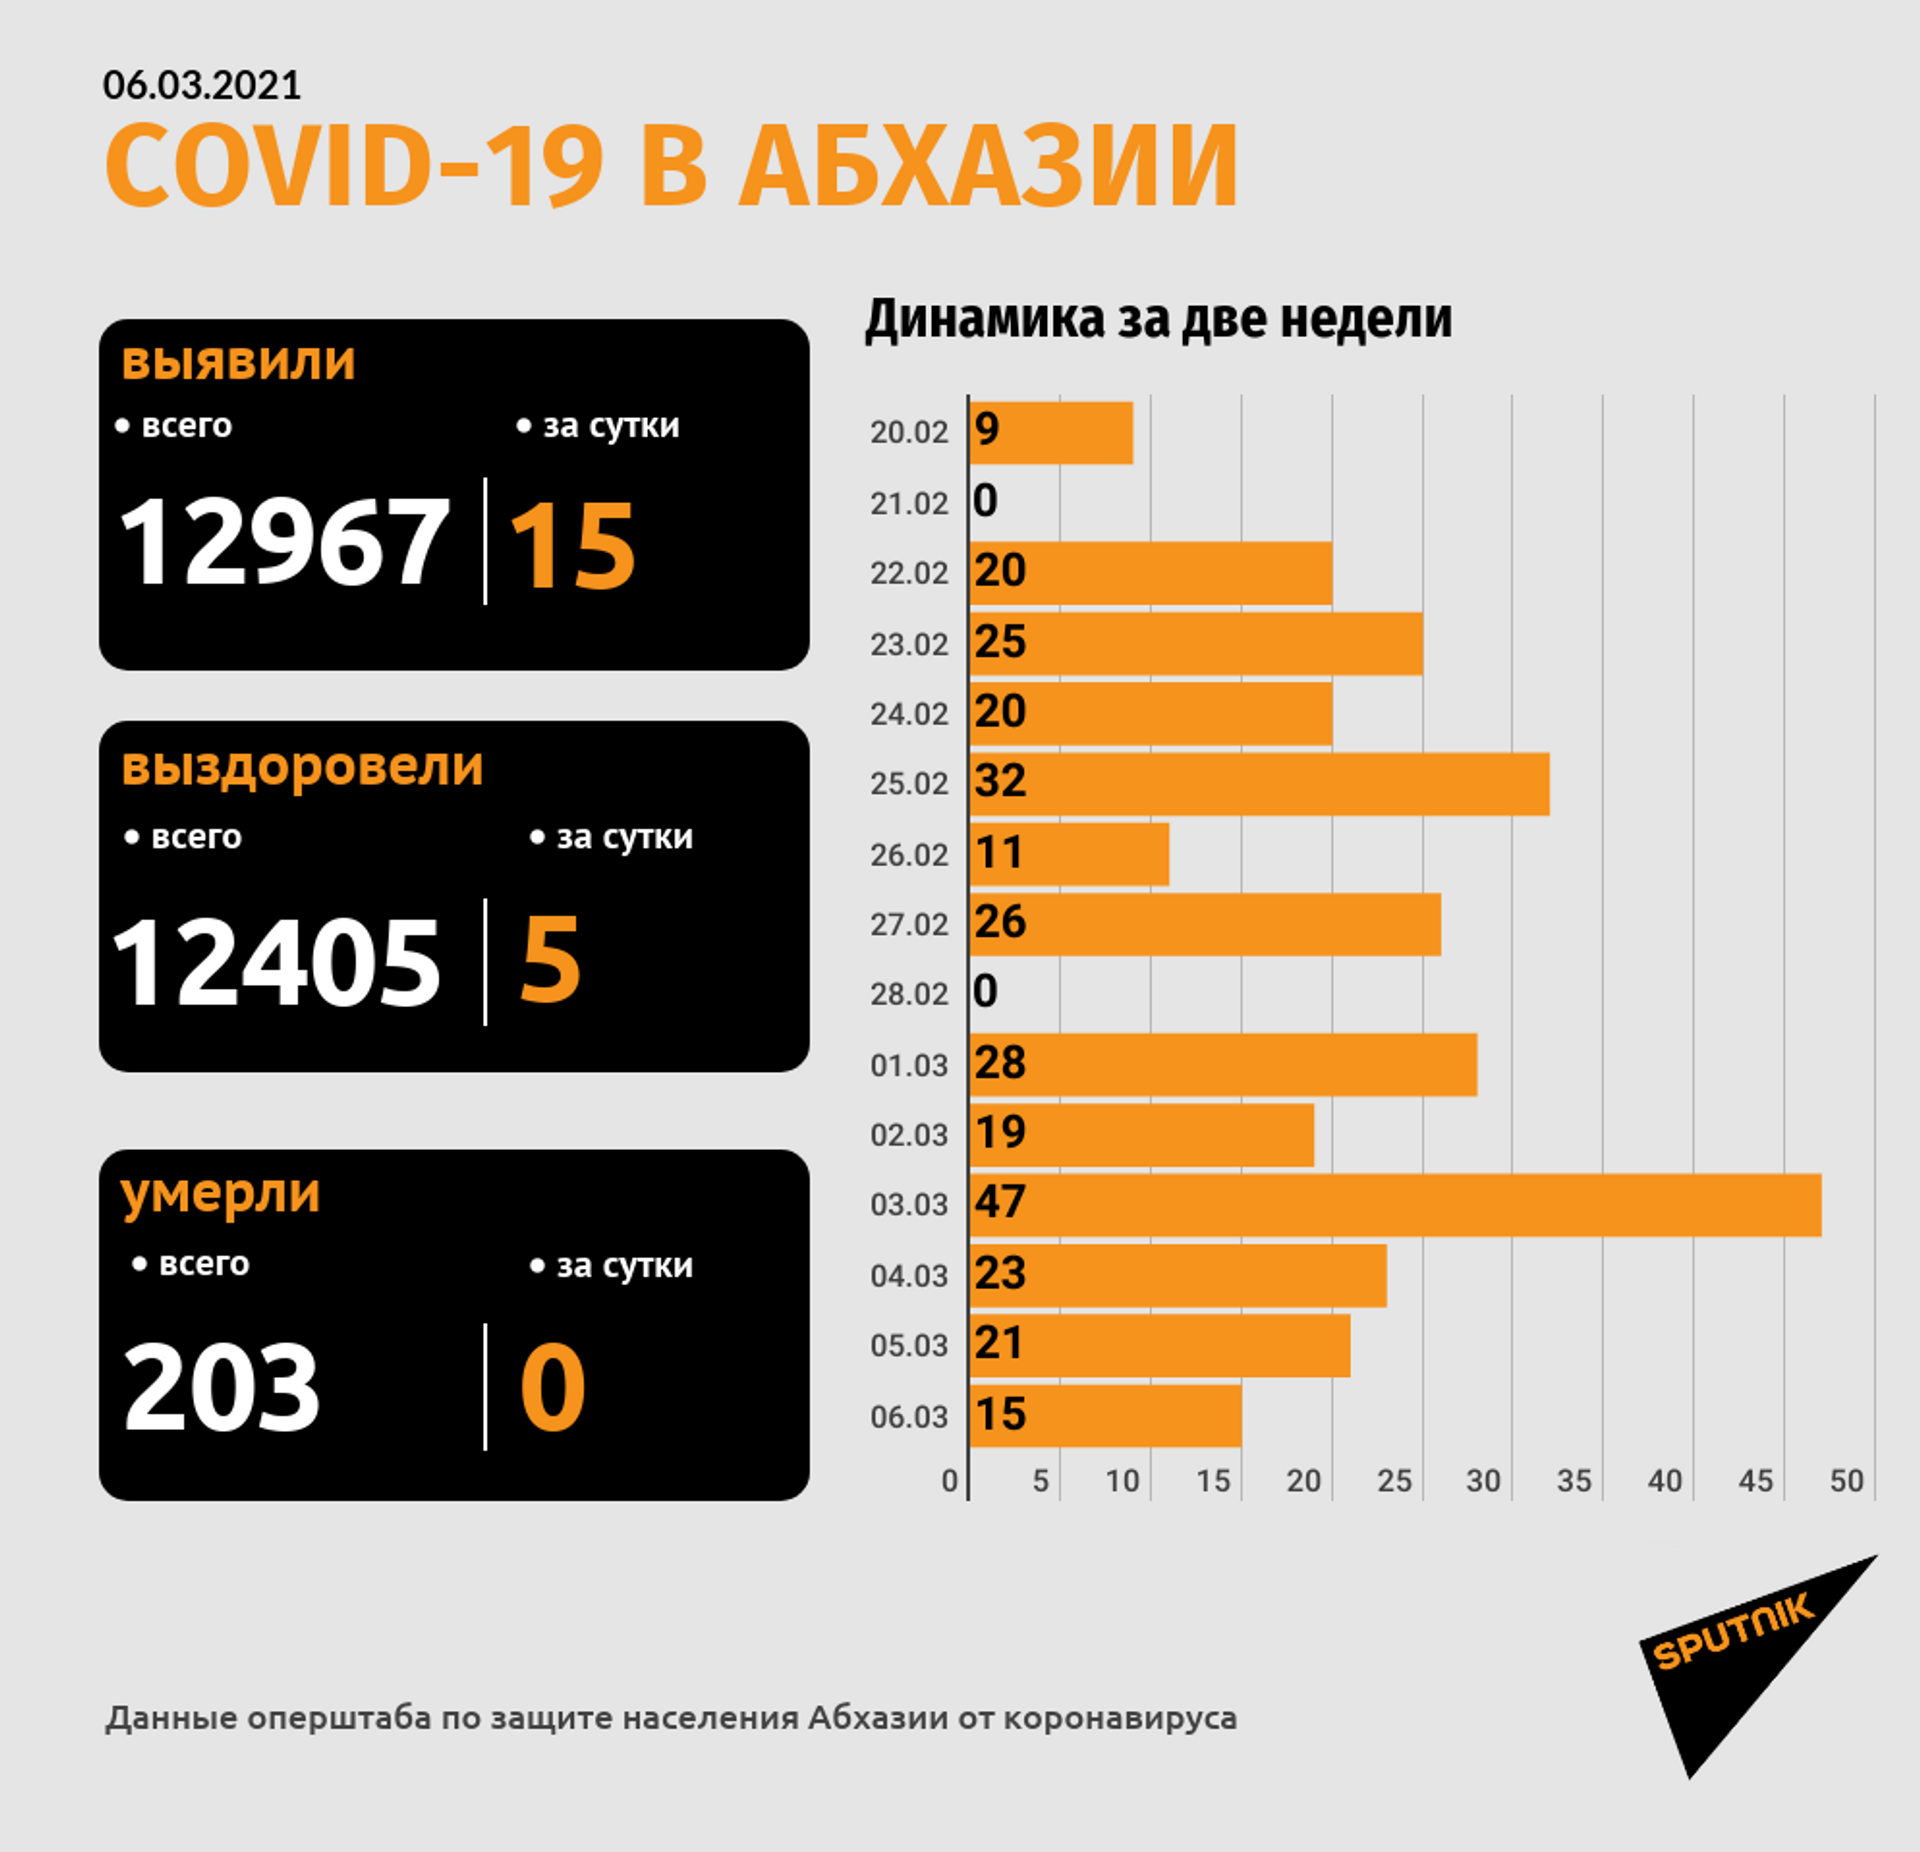 Выявлено 15 новых случаев коронавируса в Абхазии - Sputnik Абхазия, 1920, 06.03.2021